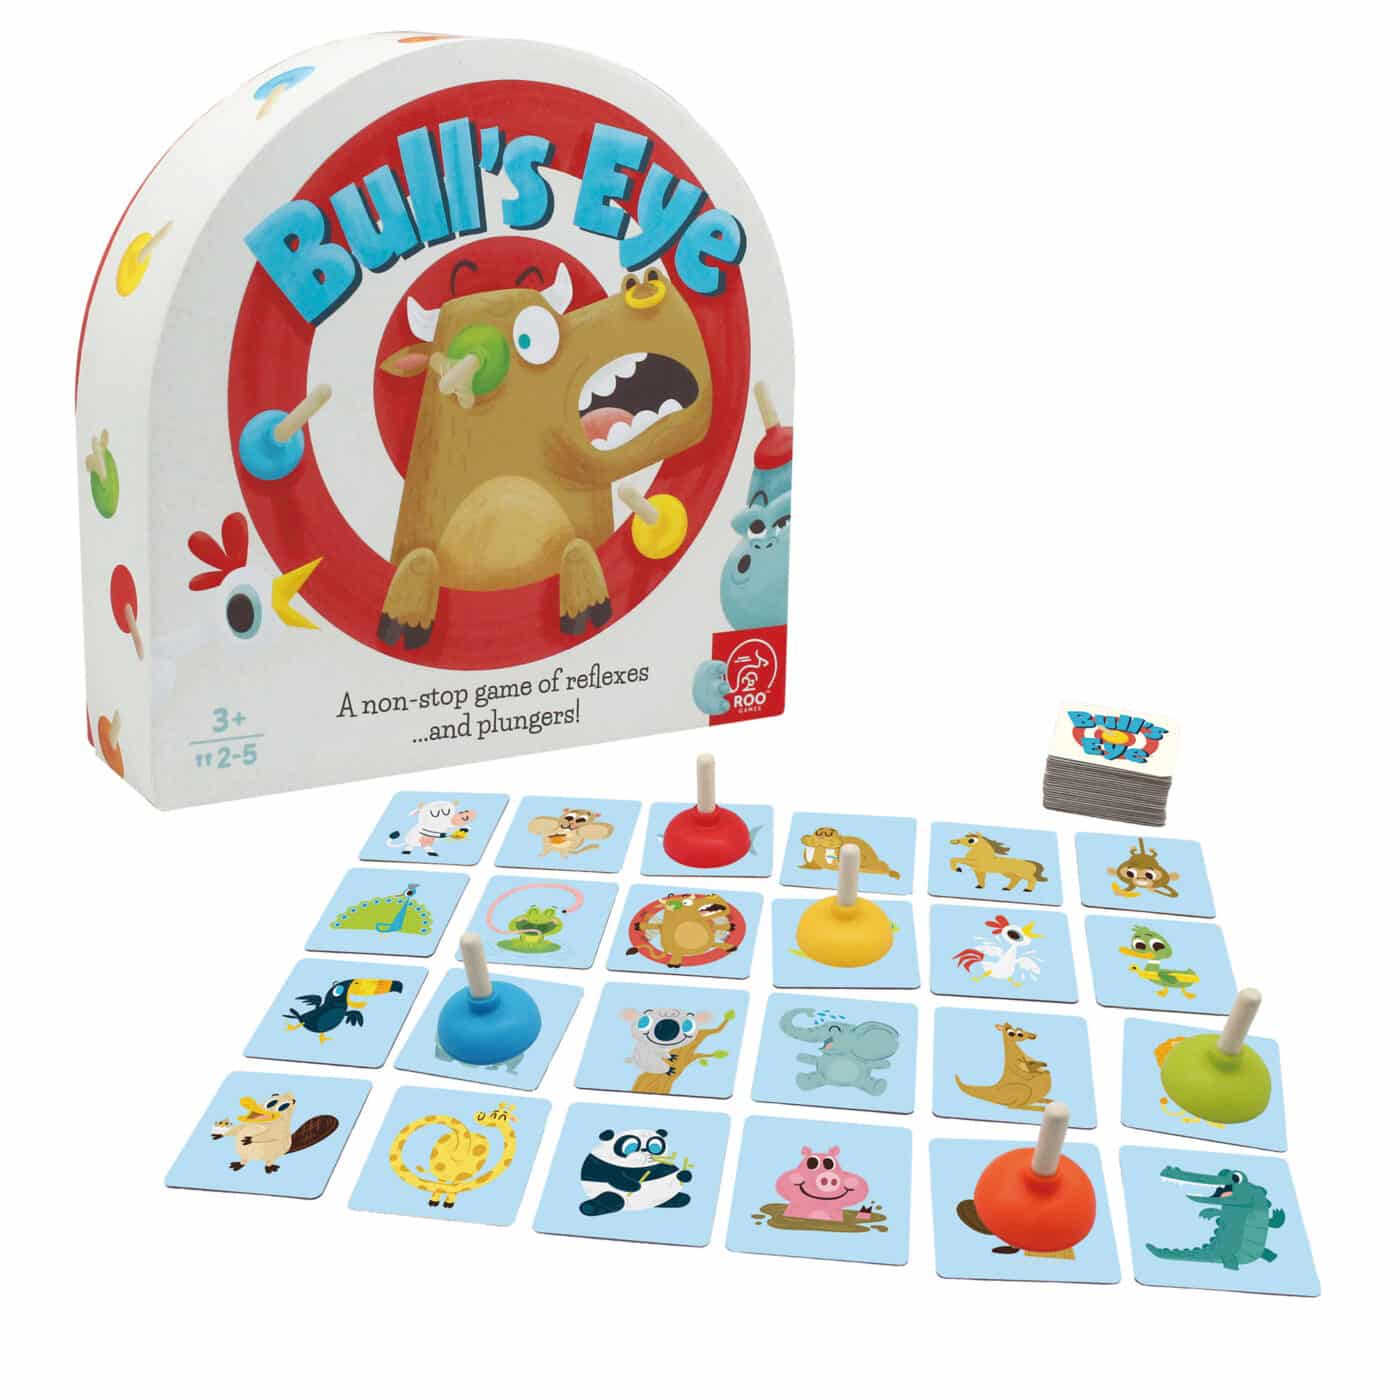 Roo Games - Bull's Eye Board Game